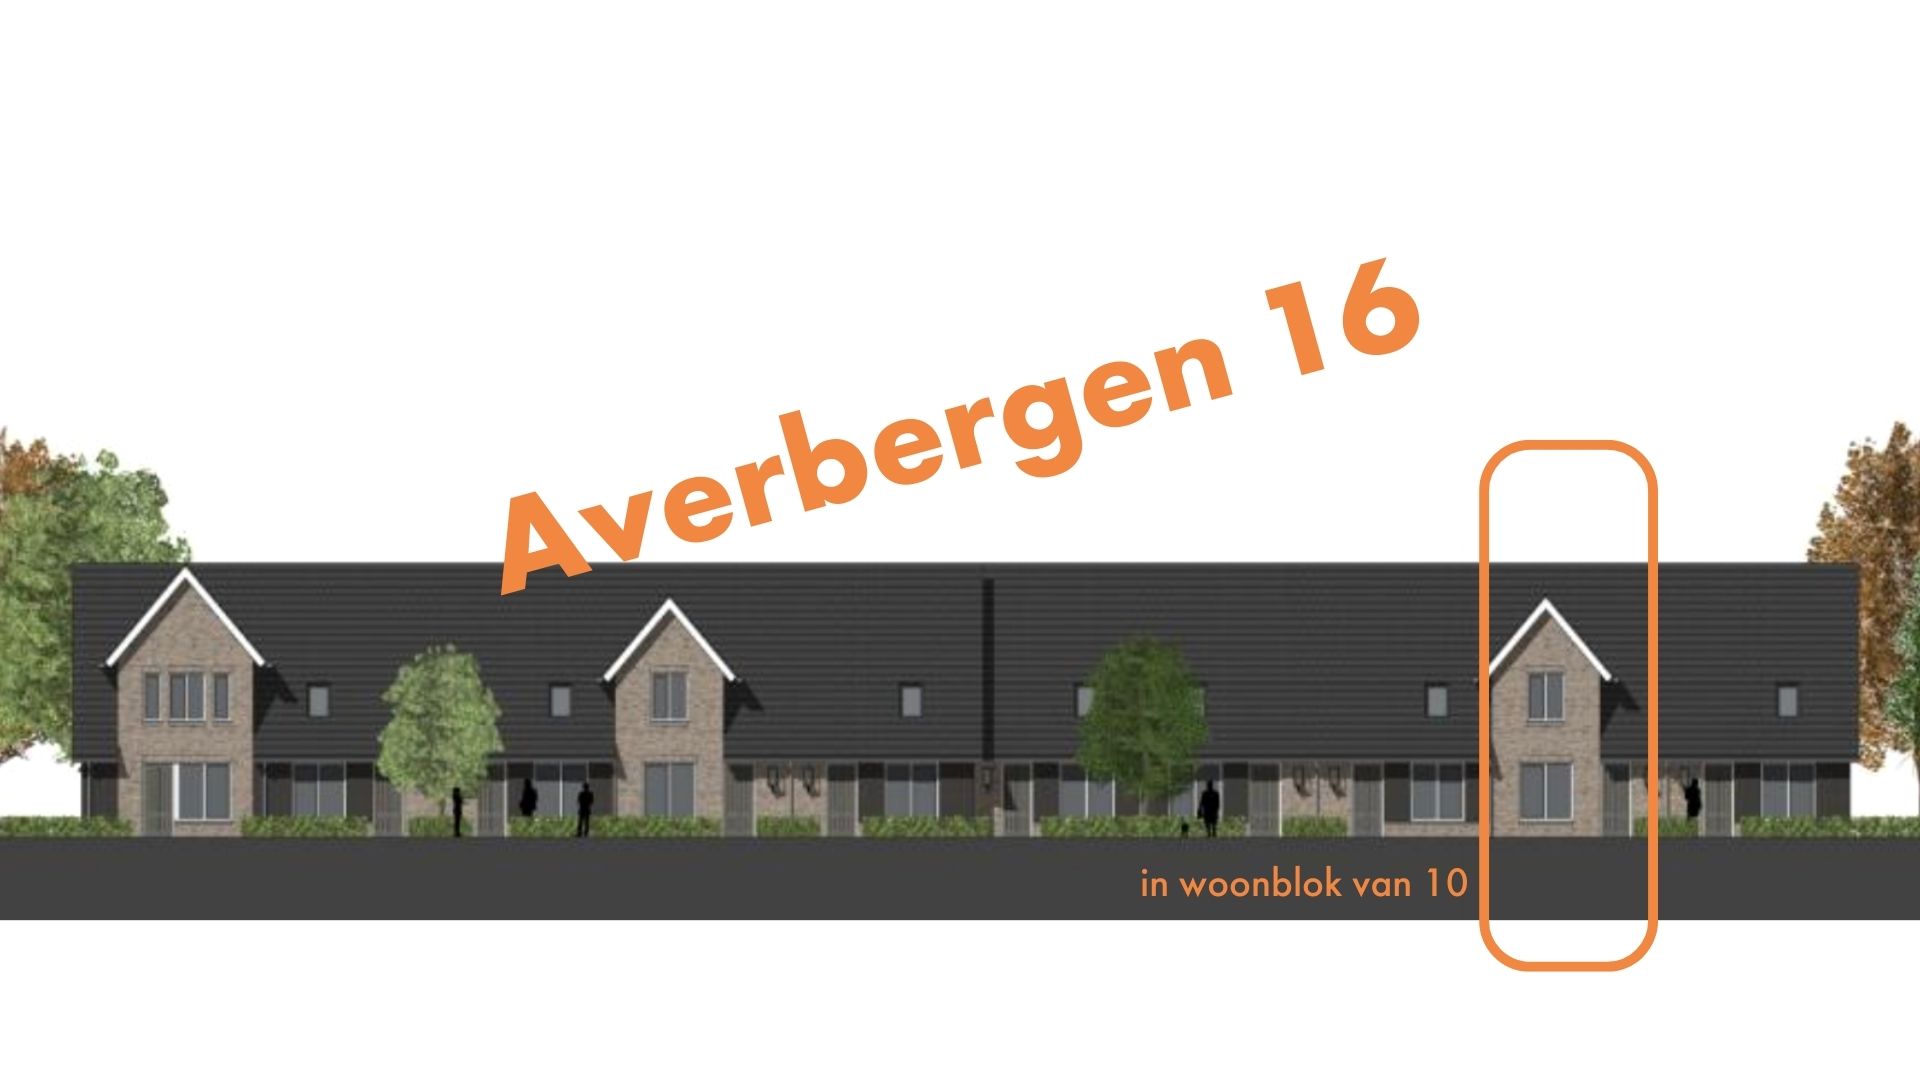 Averbergen 16